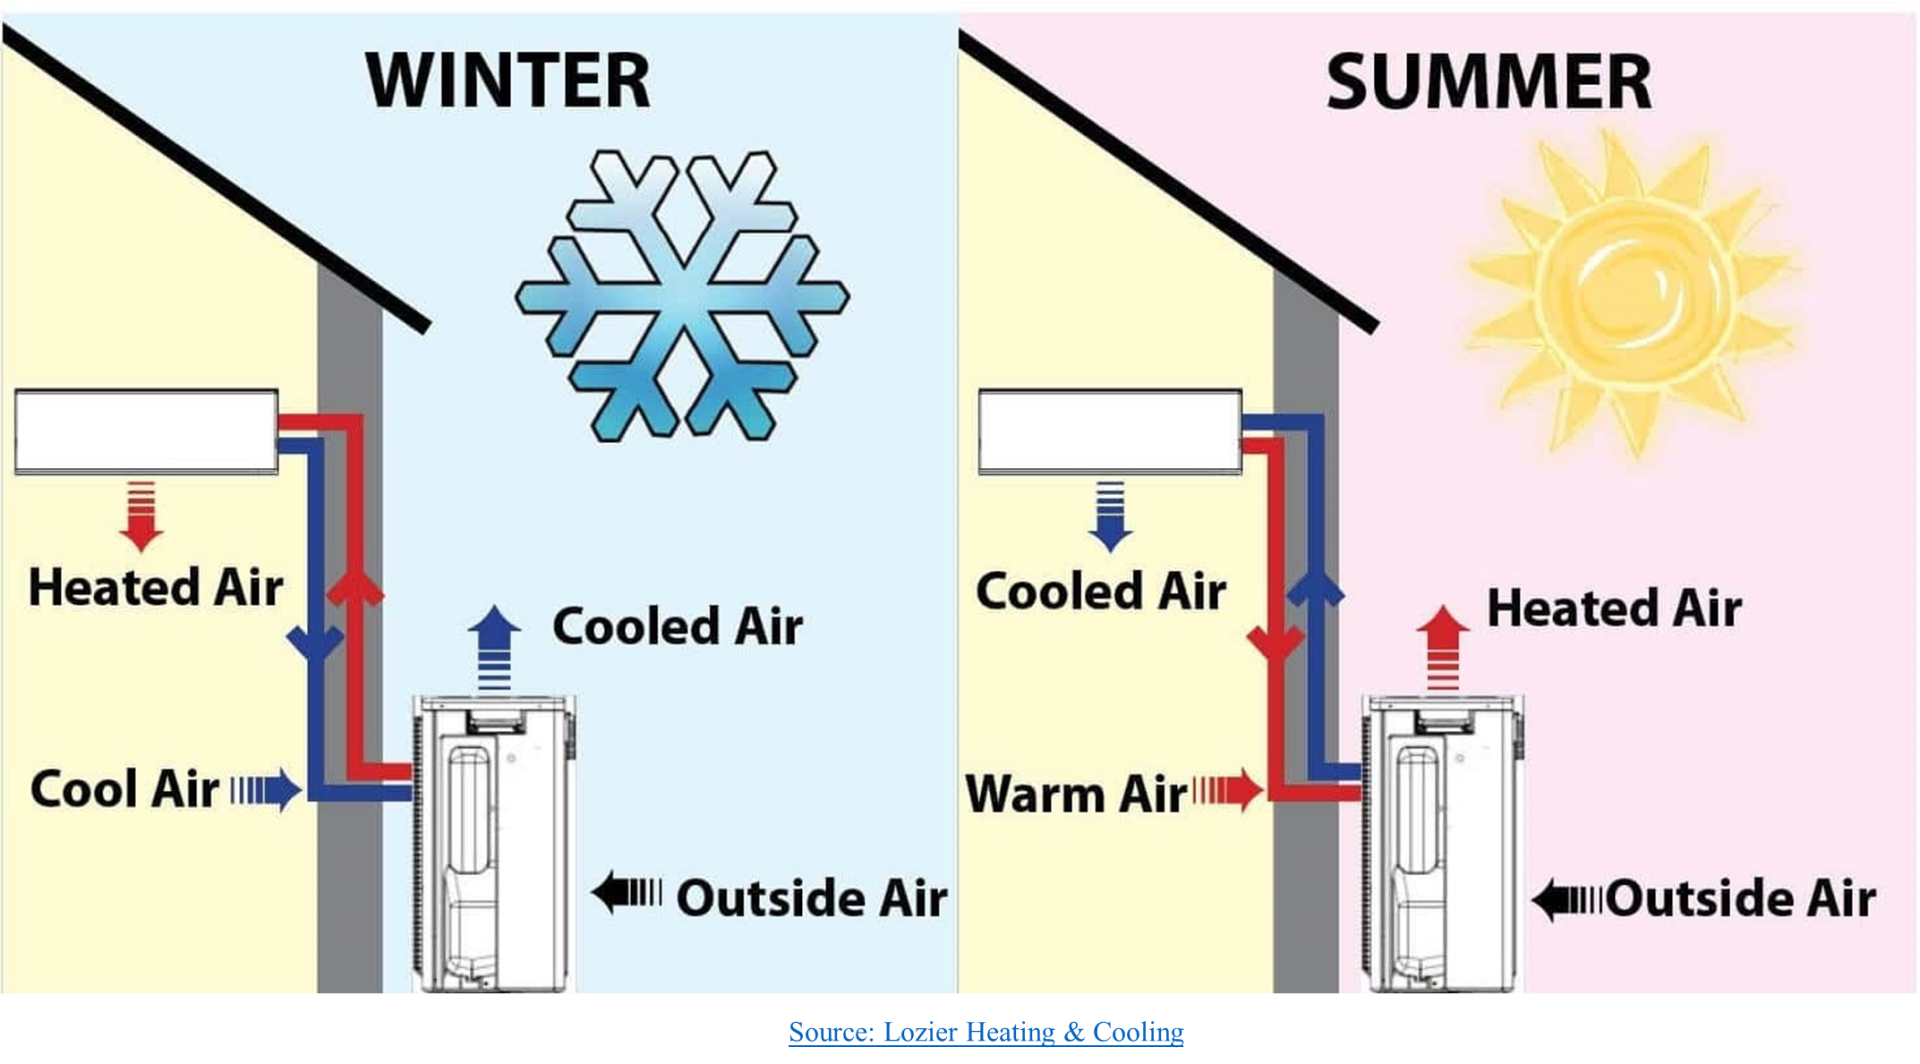 Winter & Summer Usage design